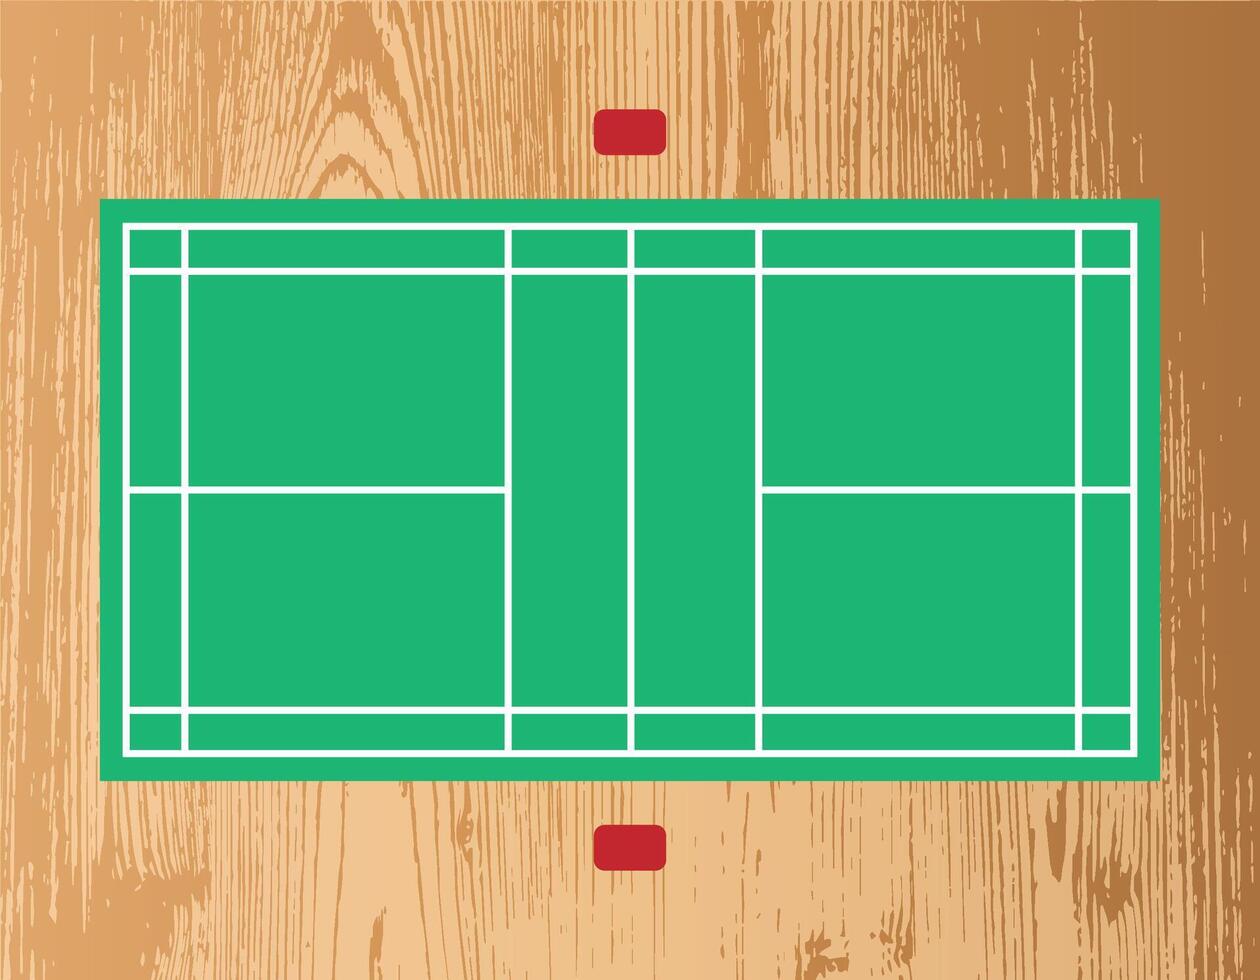 Badminton Wood Field vector